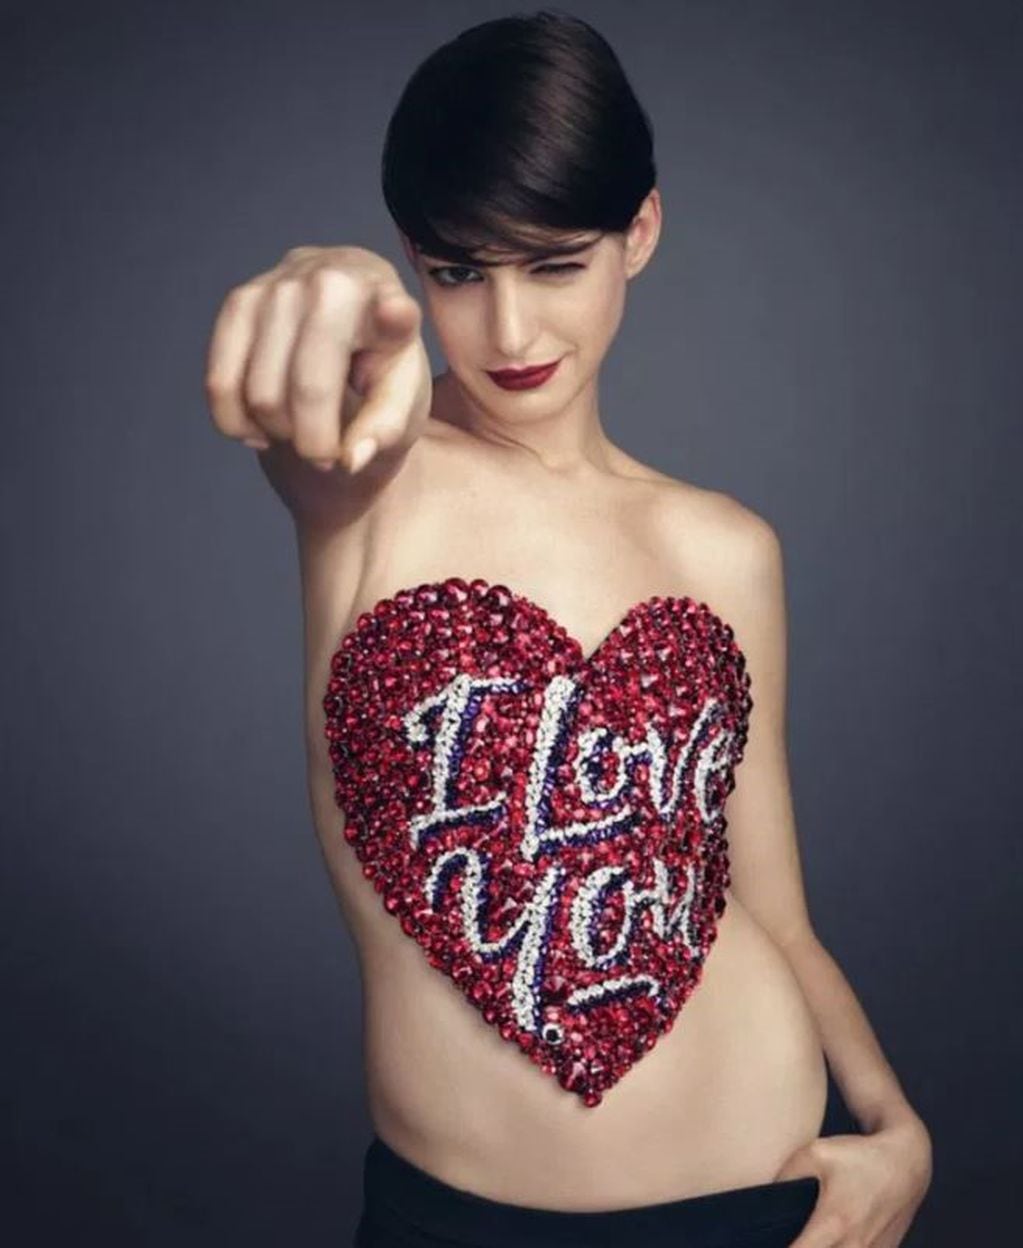 Se filtraron fotos de Anne Hathaway desnuda